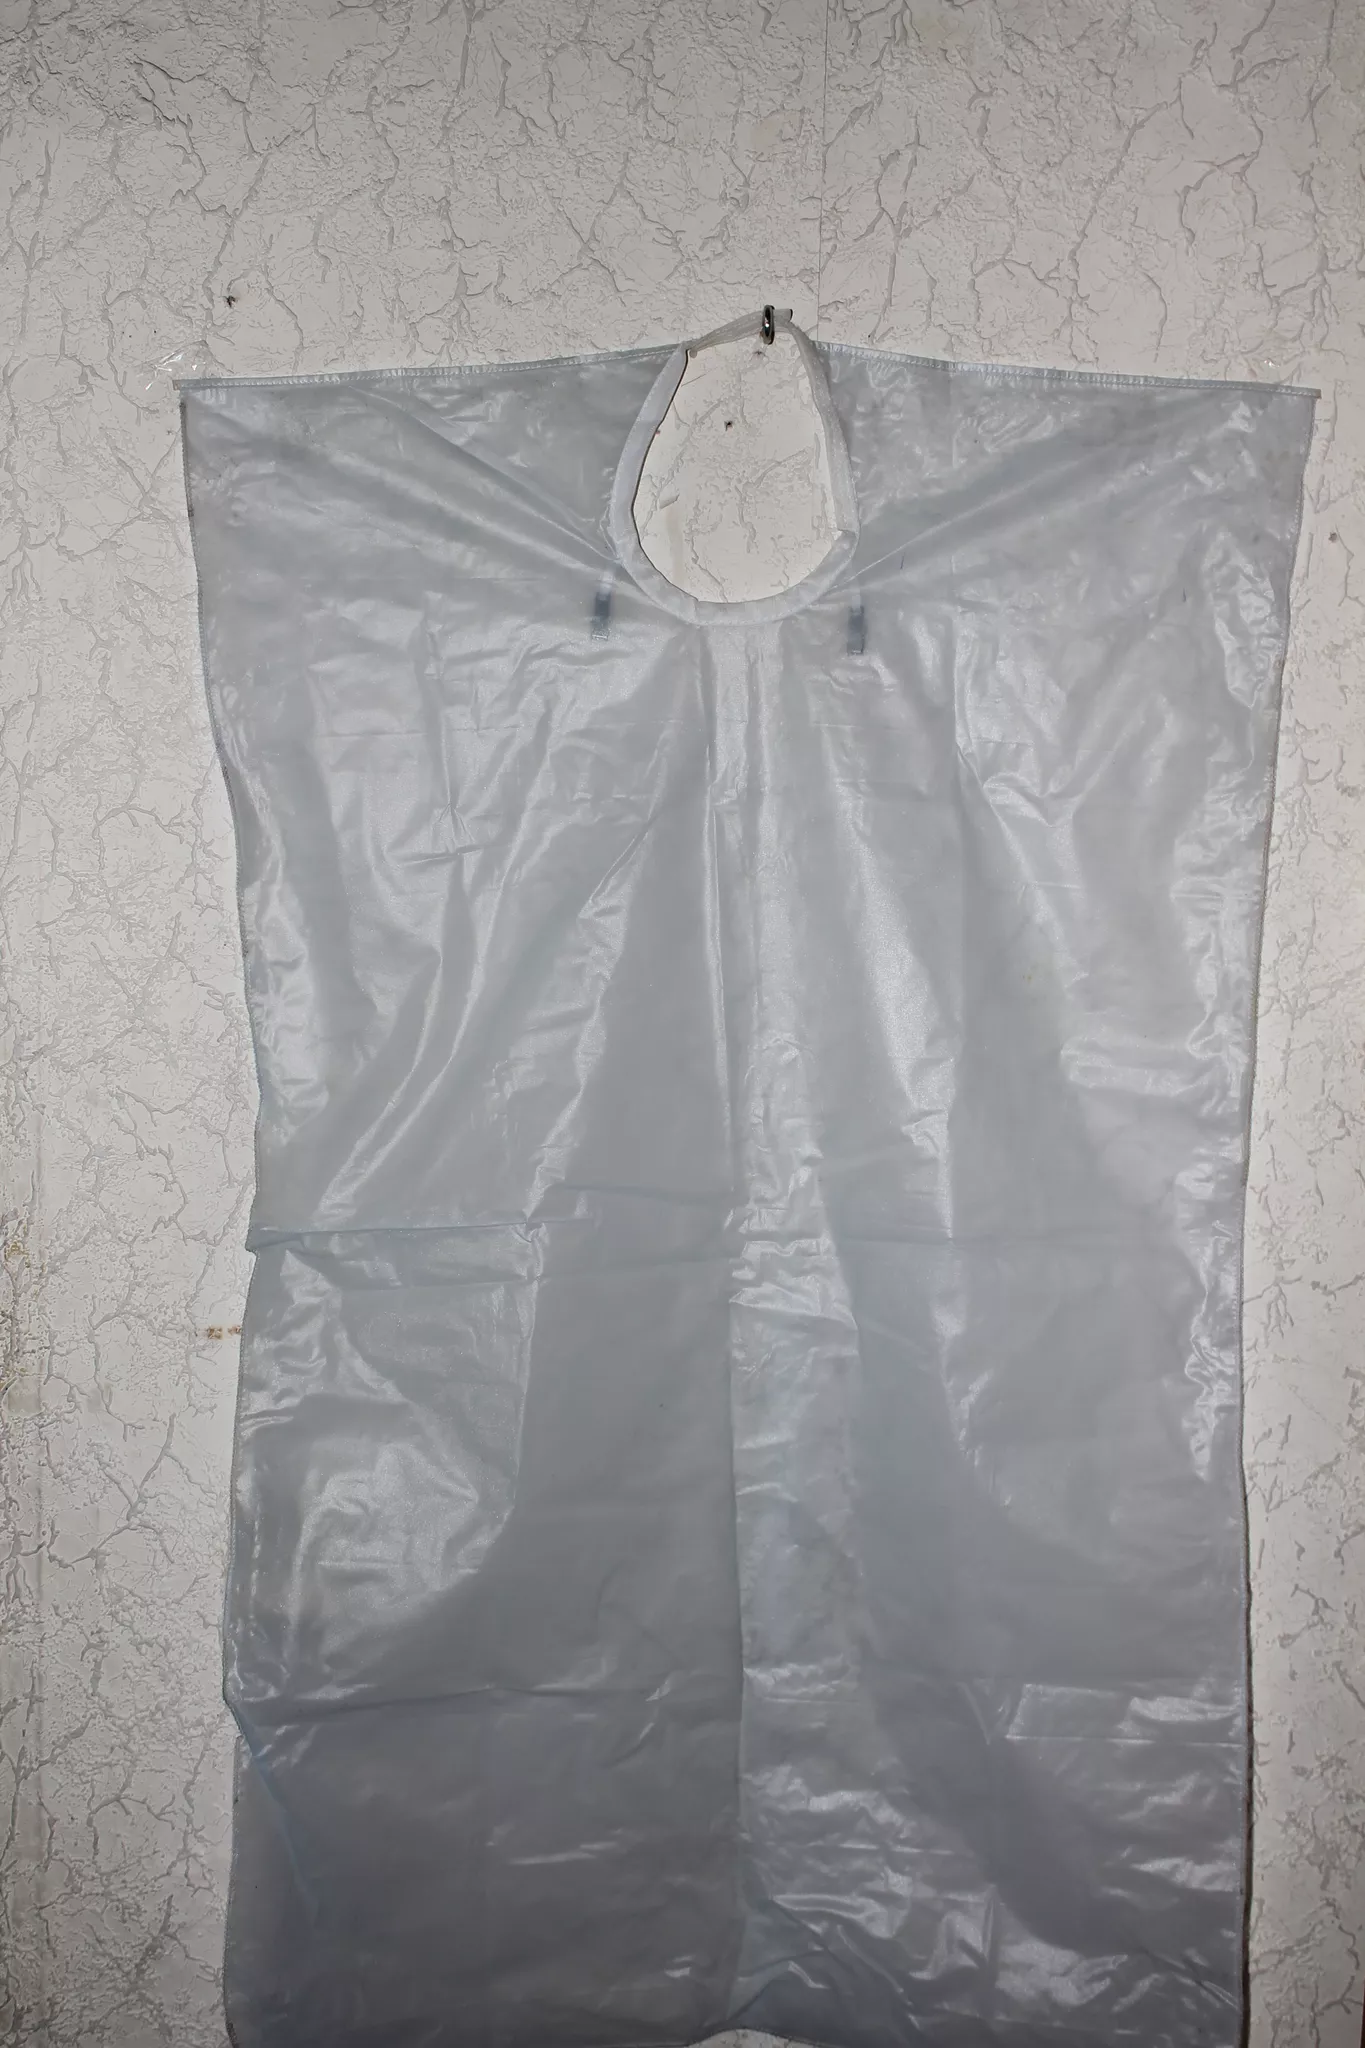 Фартук для индивидуальной защиты полиэтиленовый  Patient apron bibs (plastic)